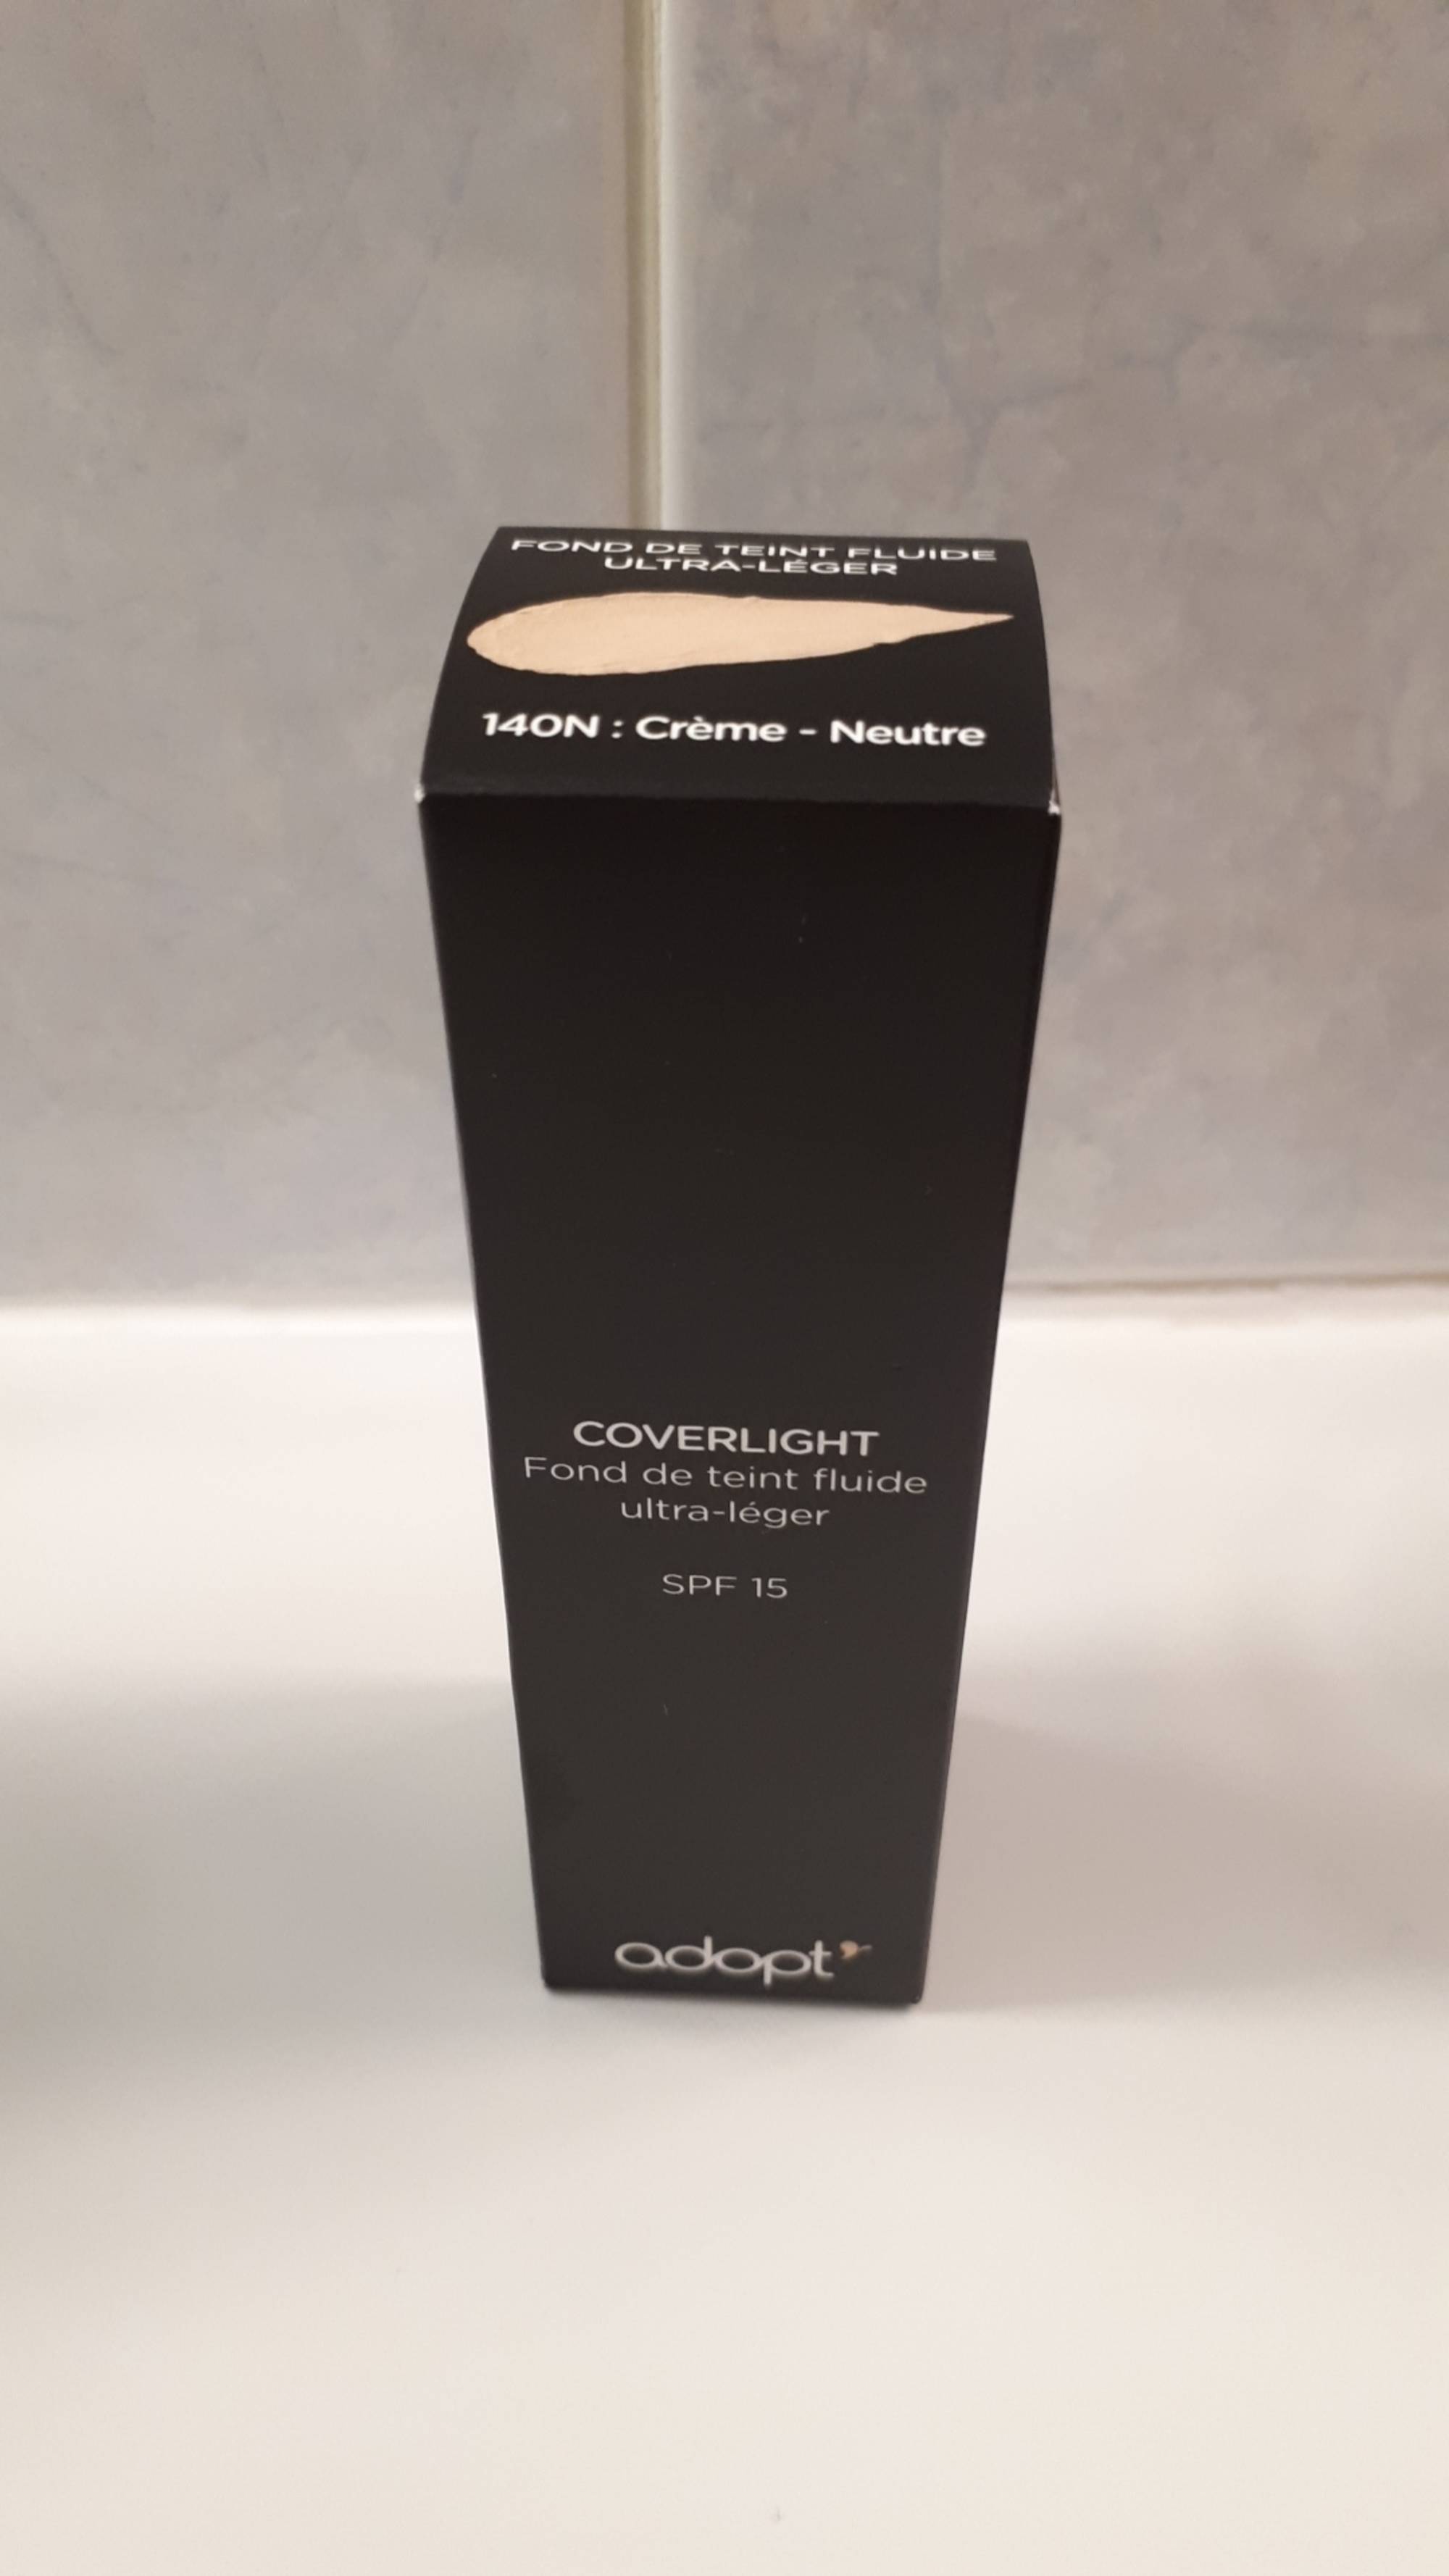 ADOPT' - Coverlight - Fond de teint fluide ultra-léger - 140N crème neutre